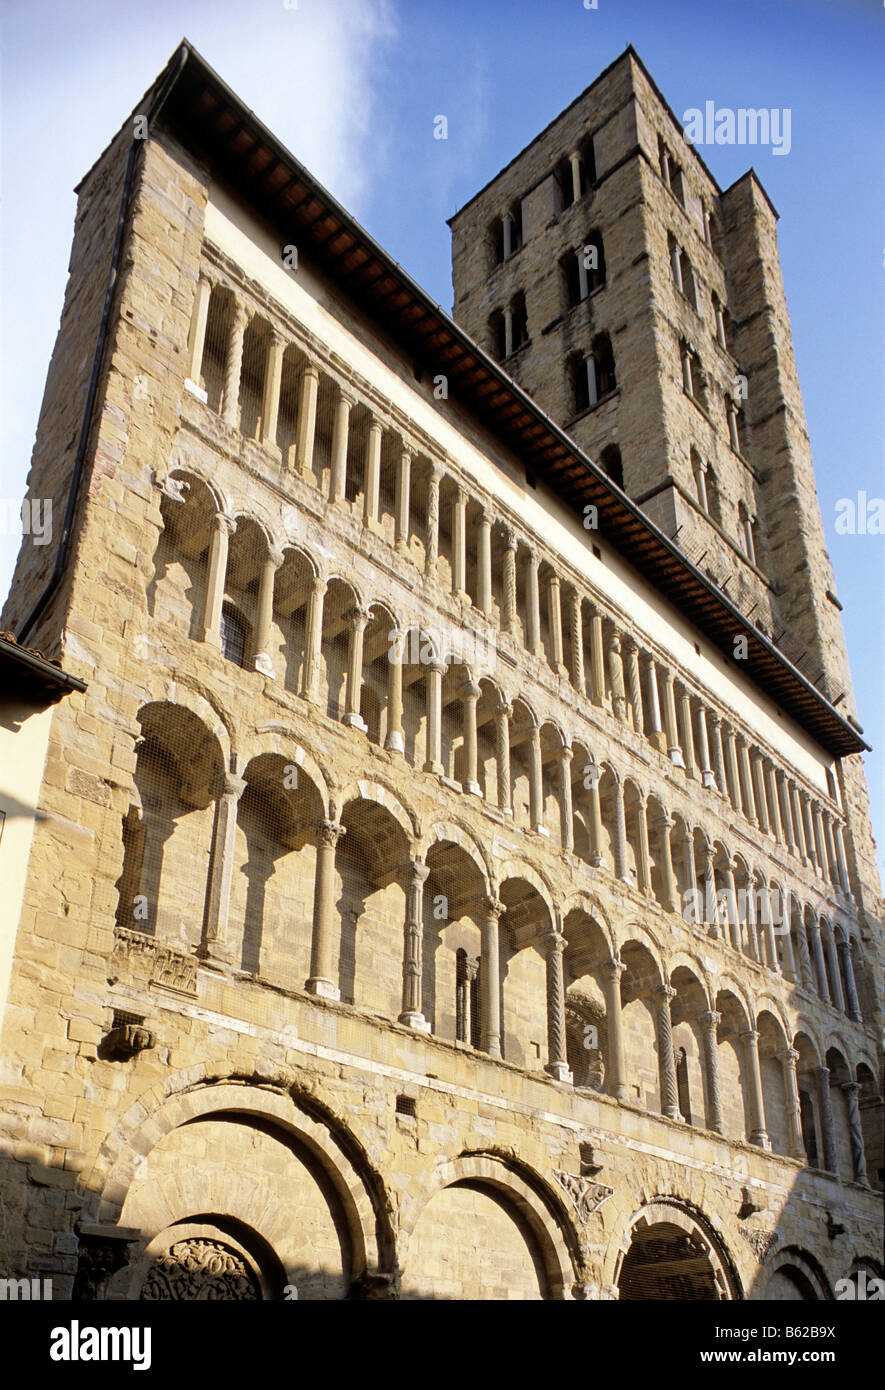 Façade de la colonne, Basilique Santa Maria delle Pieve, Arezzo, Toscane, Italie, Europe Banque D'Images